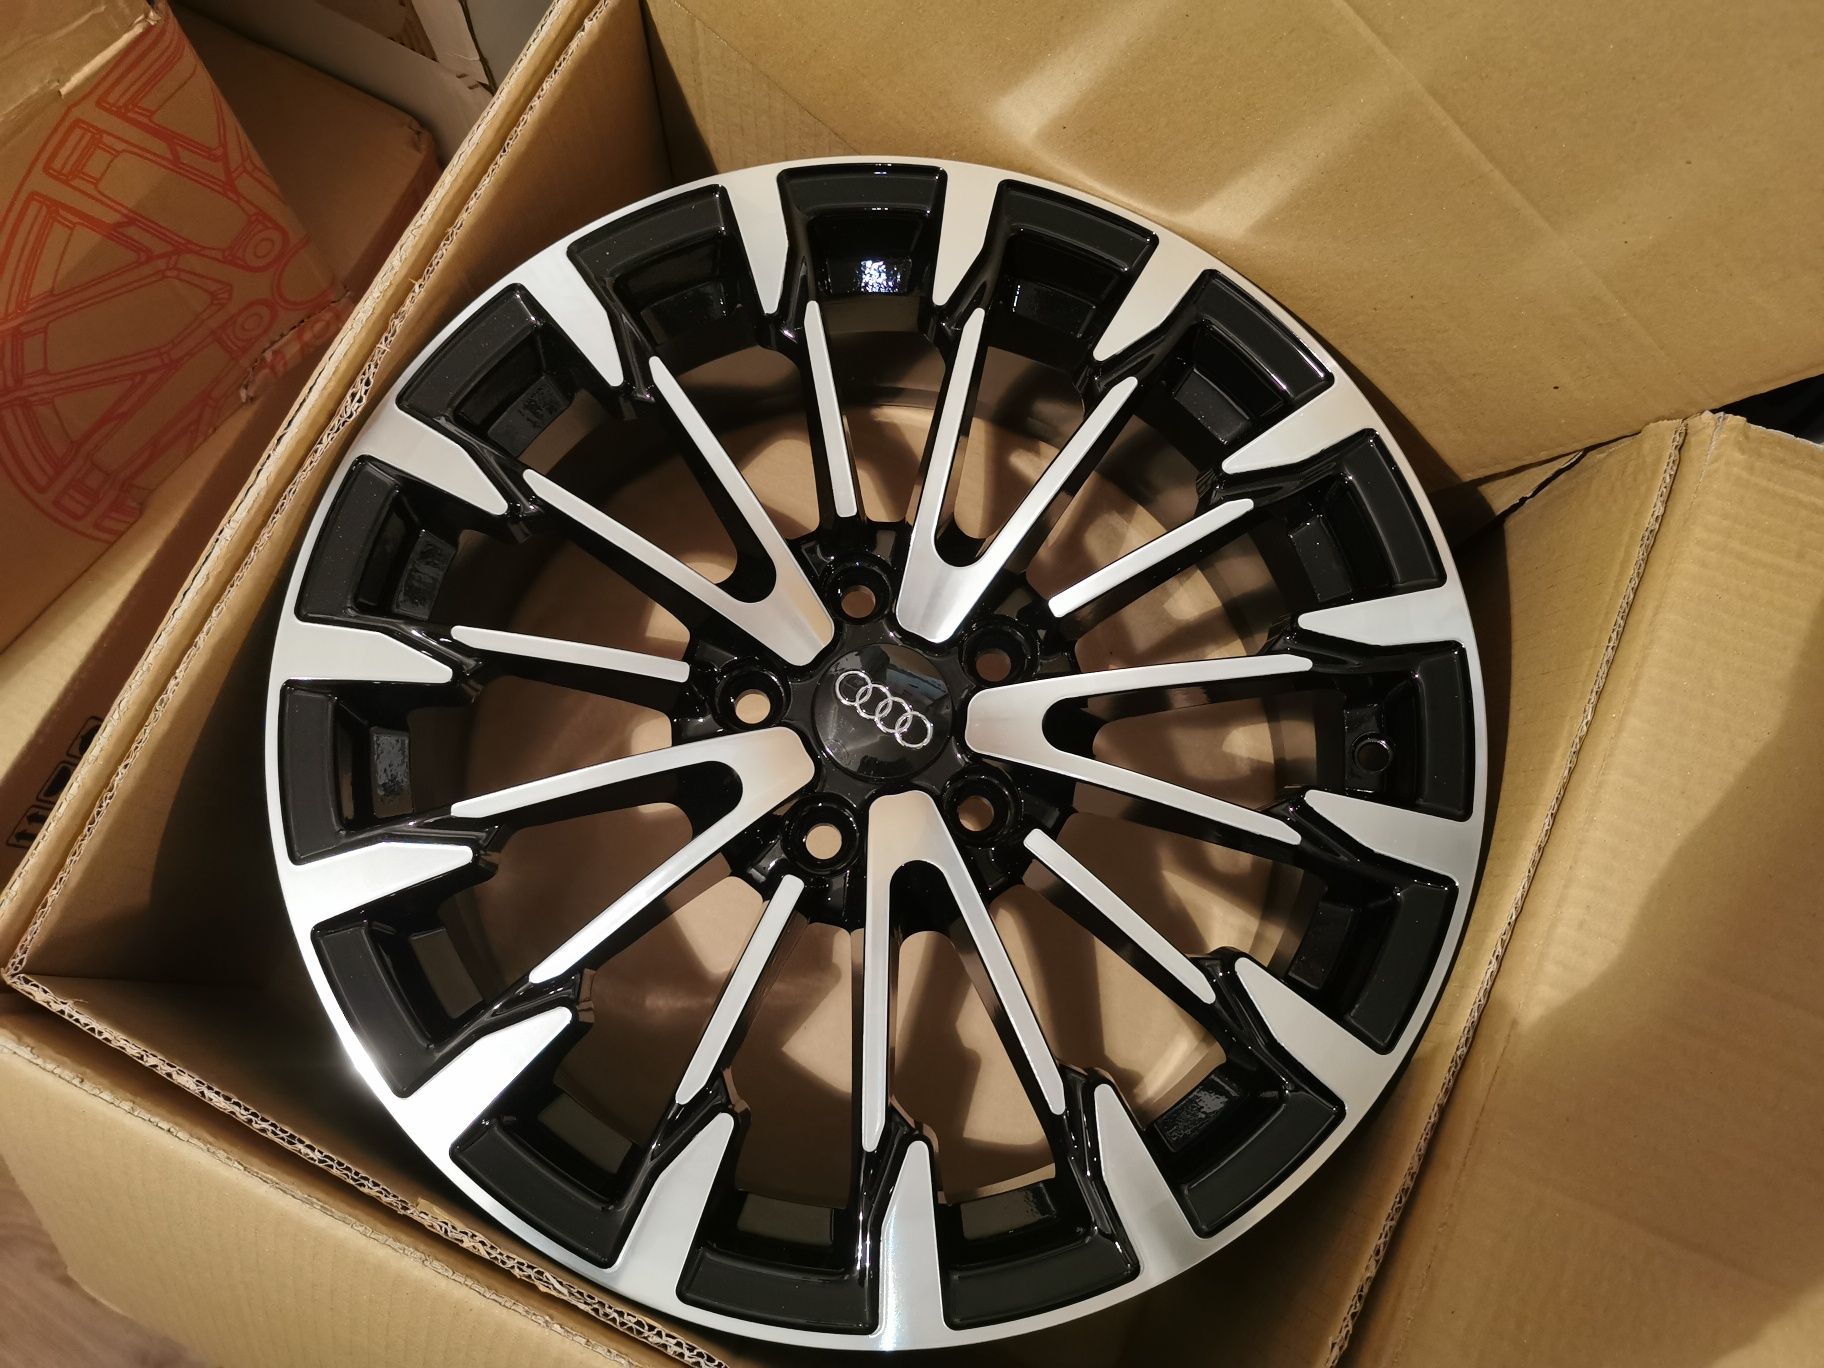 Vand jante de aliaj pentru Audi pe 17 marca RC wheels model 276